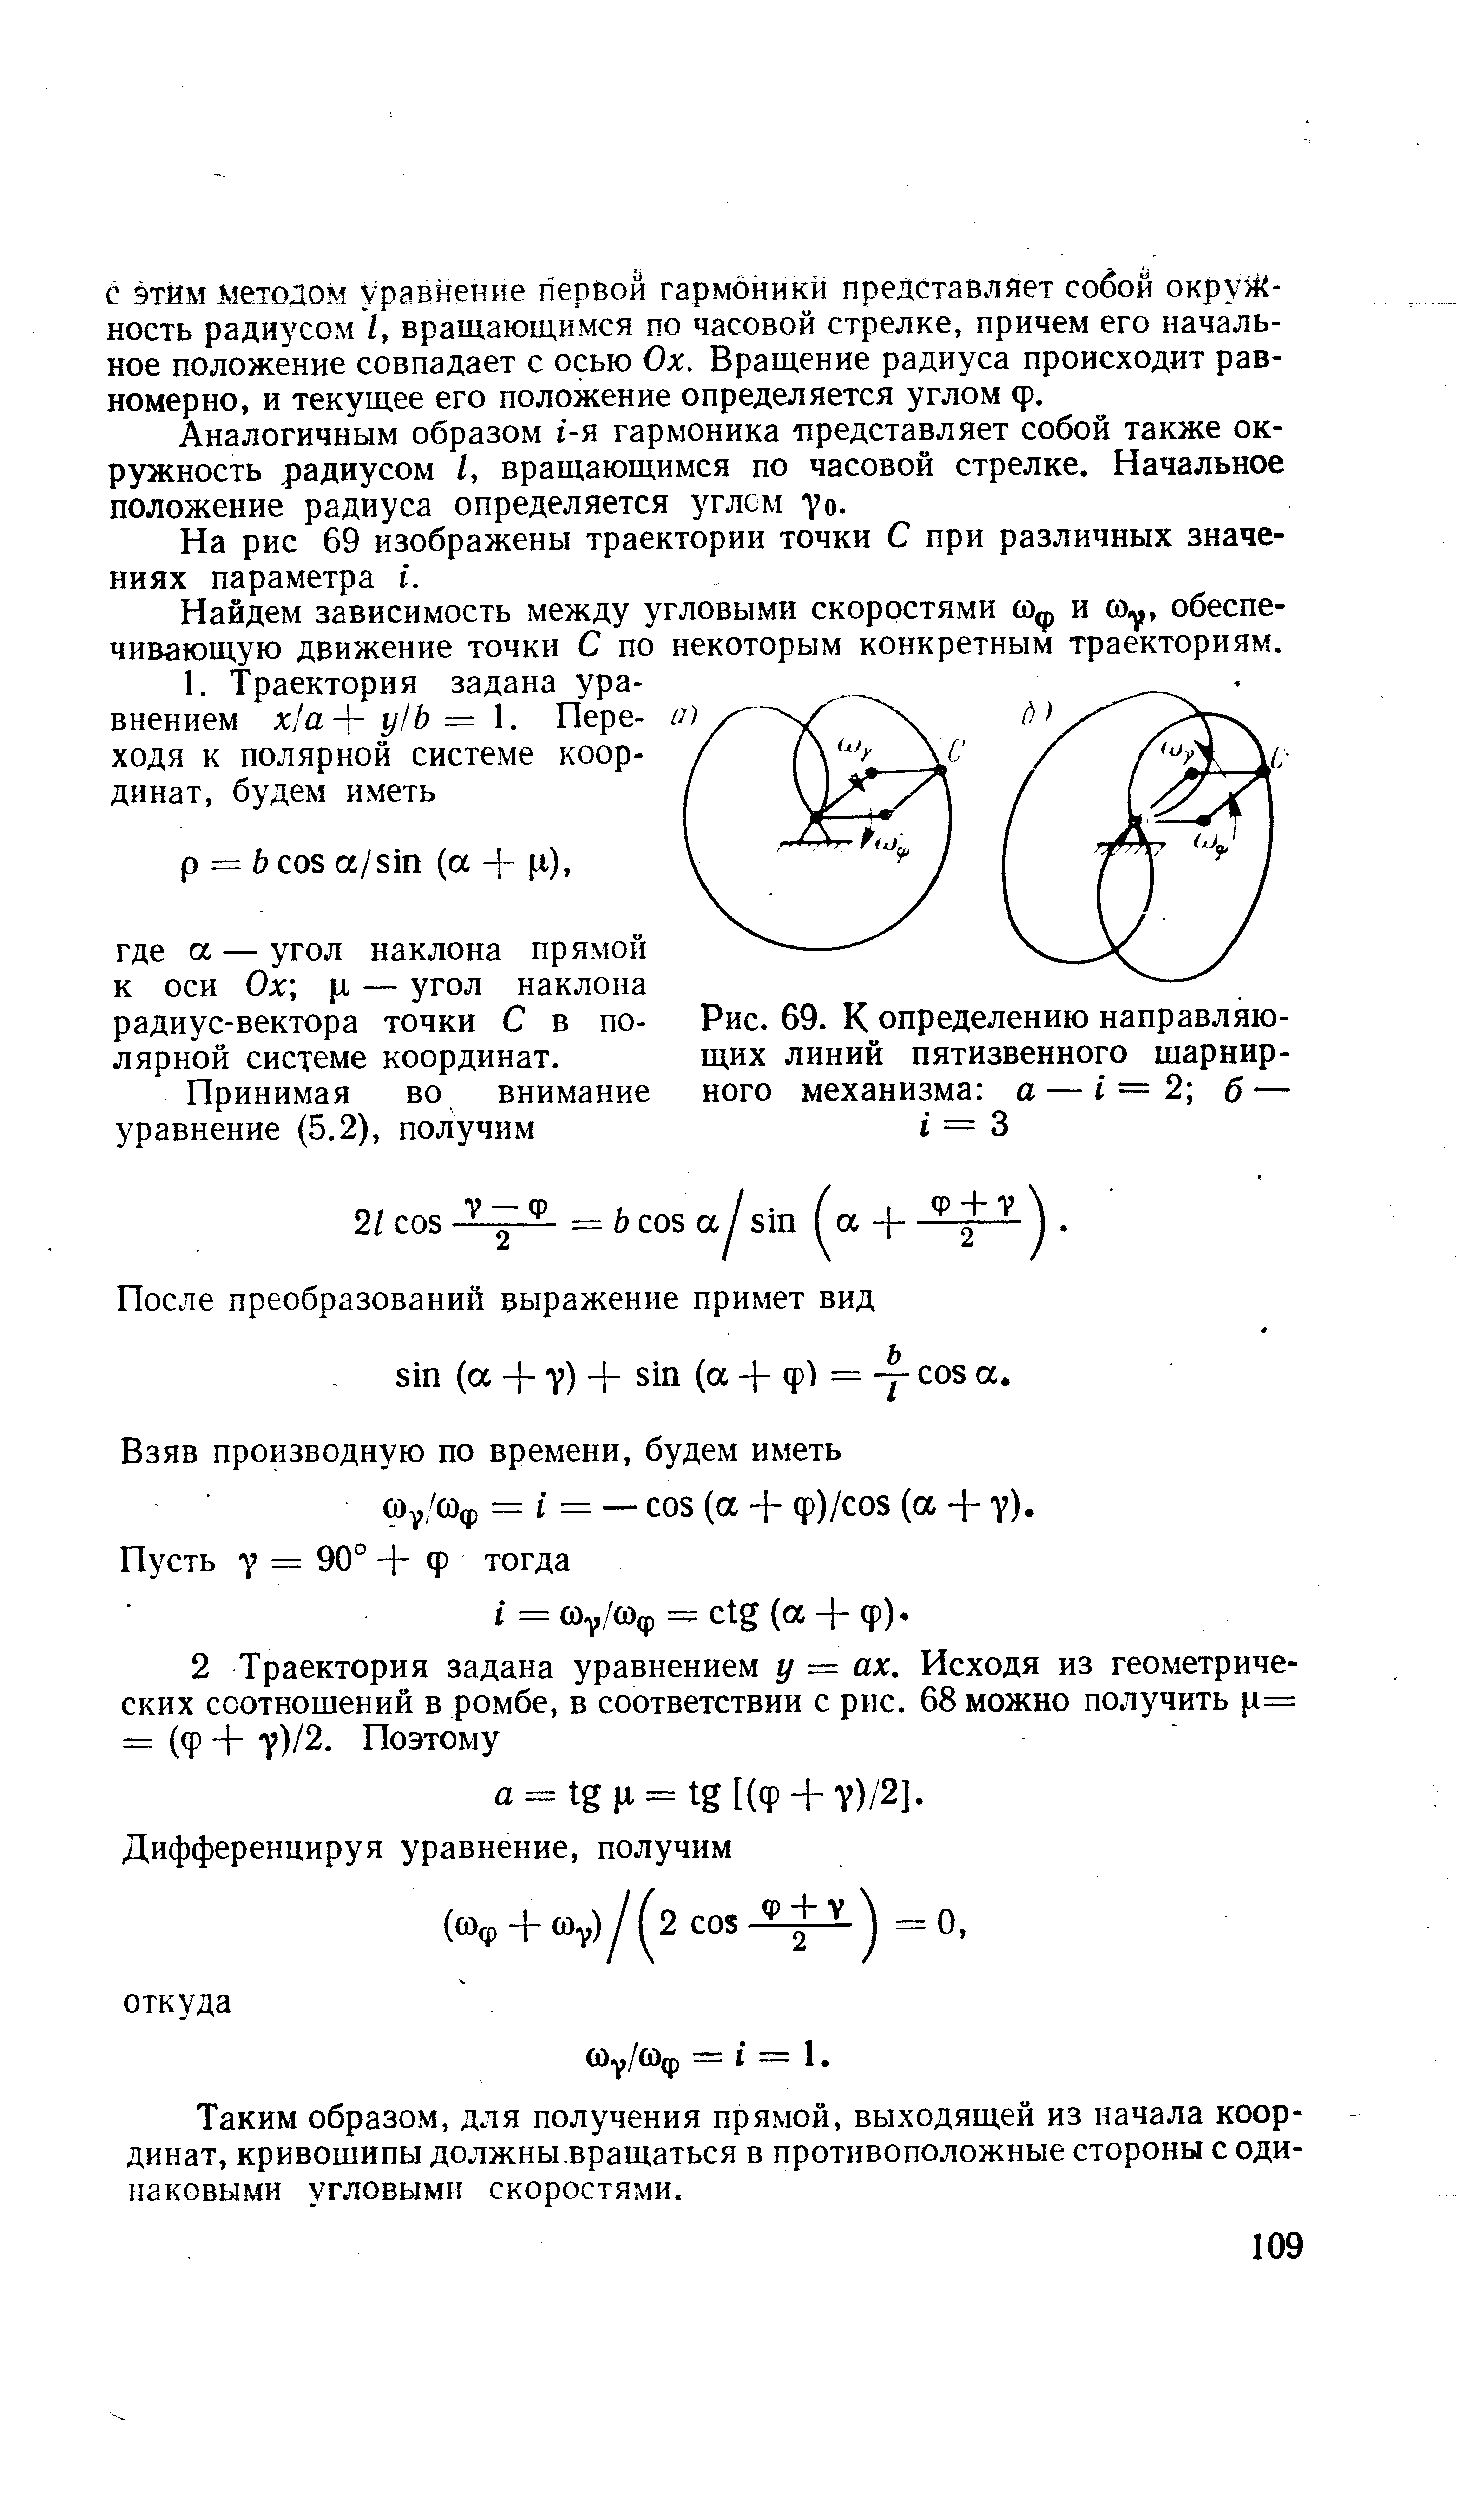 Рис. 69. К определению направляющих линий пятизвенного шарнирного механизма о — = 2 б — I = 3
